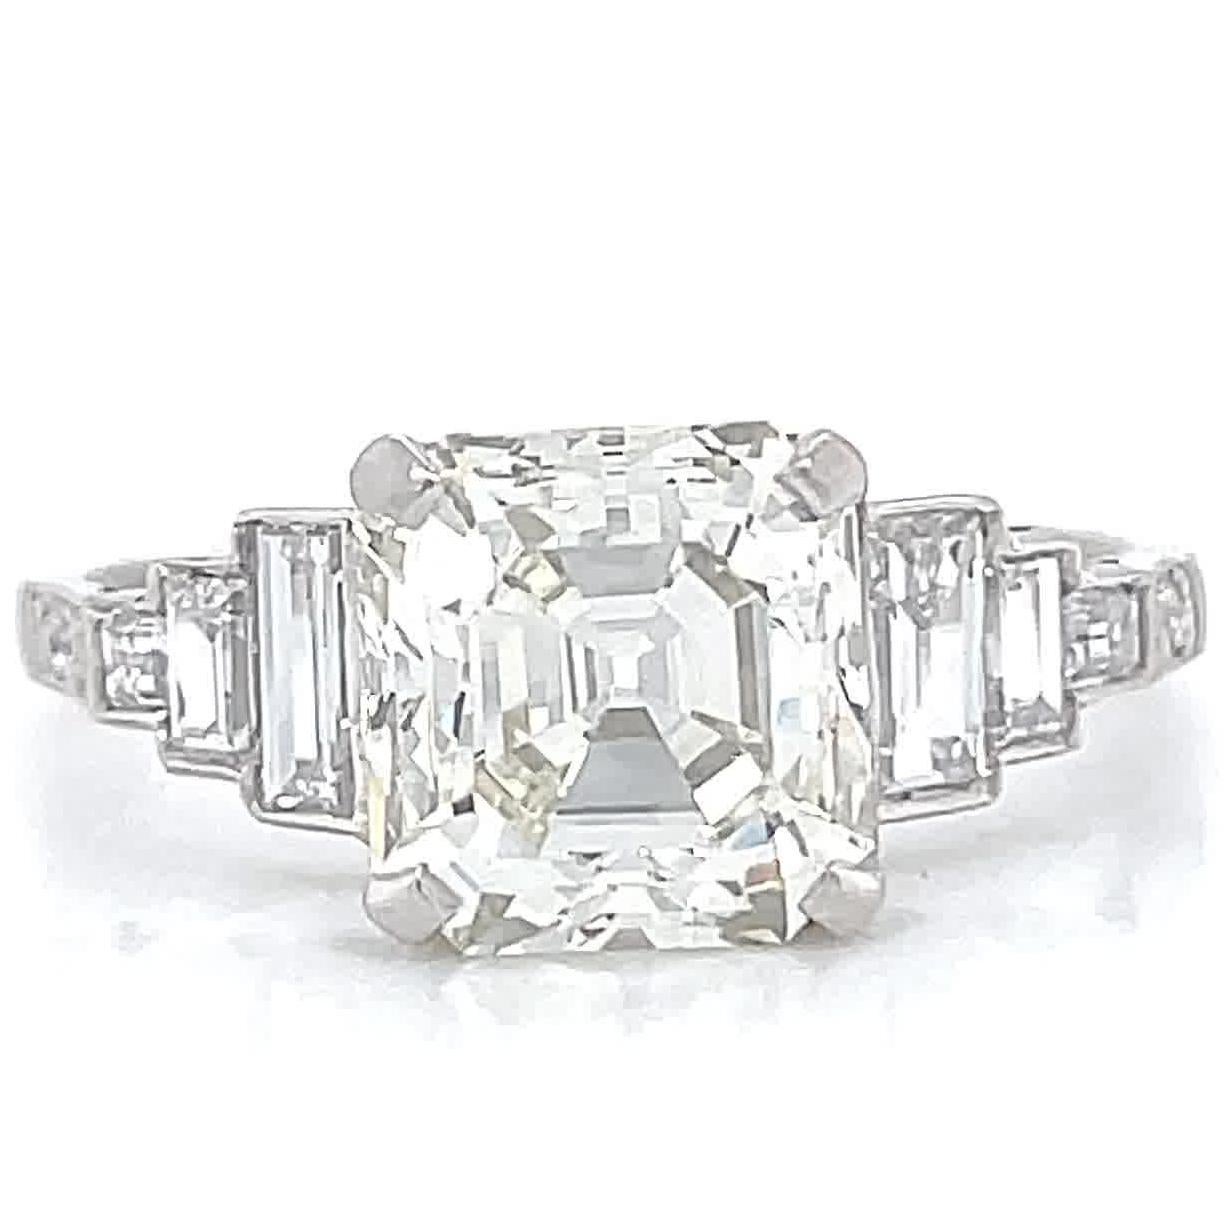 Emerald Cut Art Deco Inspired GIA 2.86 Carat Square Emerald Diamond Platinum Engagement Ring